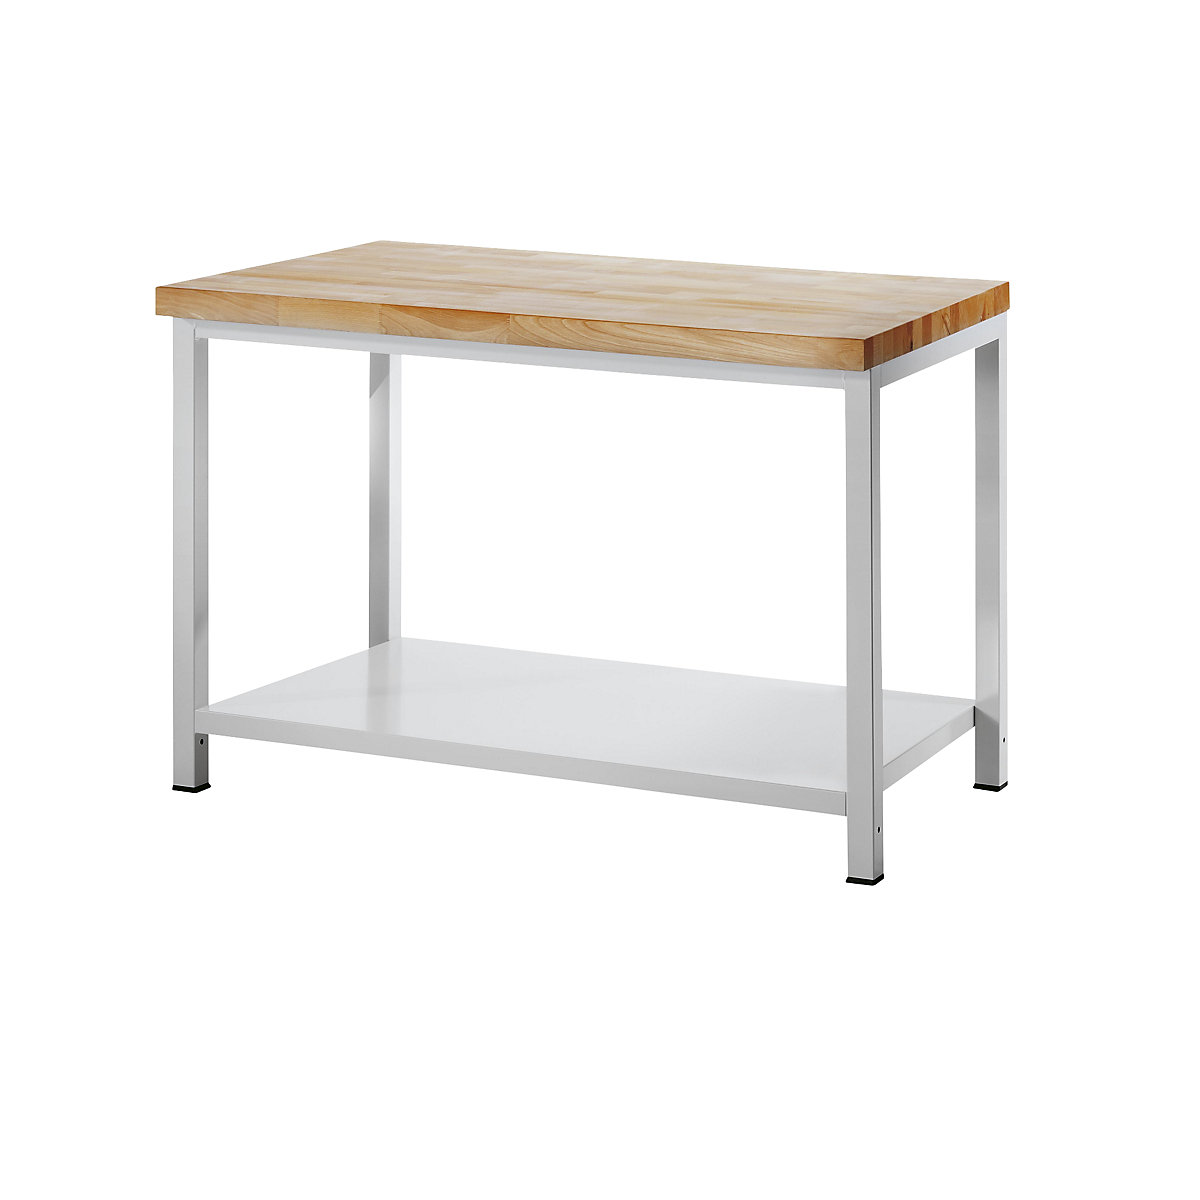 Stół warsztatowy, konstrukcja ramowa – RAU, 1 półka z blachy stalowej, głęb. 700 mm, szer. 1250 mm-4